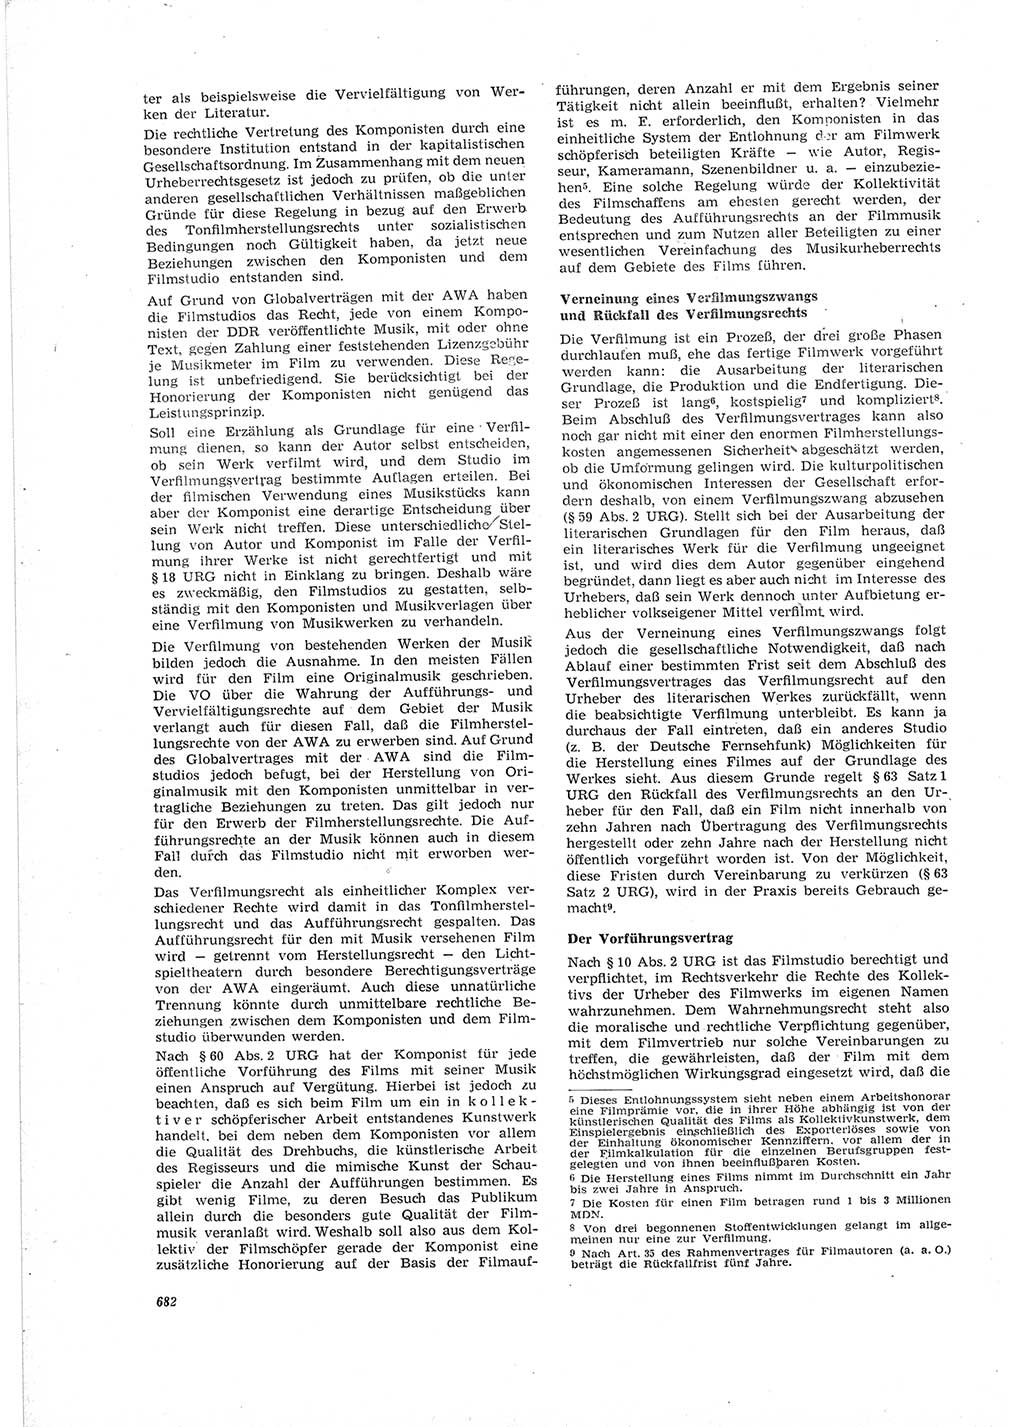 Neue Justiz (NJ), Zeitschrift für Recht und Rechtswissenschaft [Deutsche Demokratische Republik (DDR)], 19. Jahrgang 1965, Seite 682 (NJ DDR 1965, S. 682)